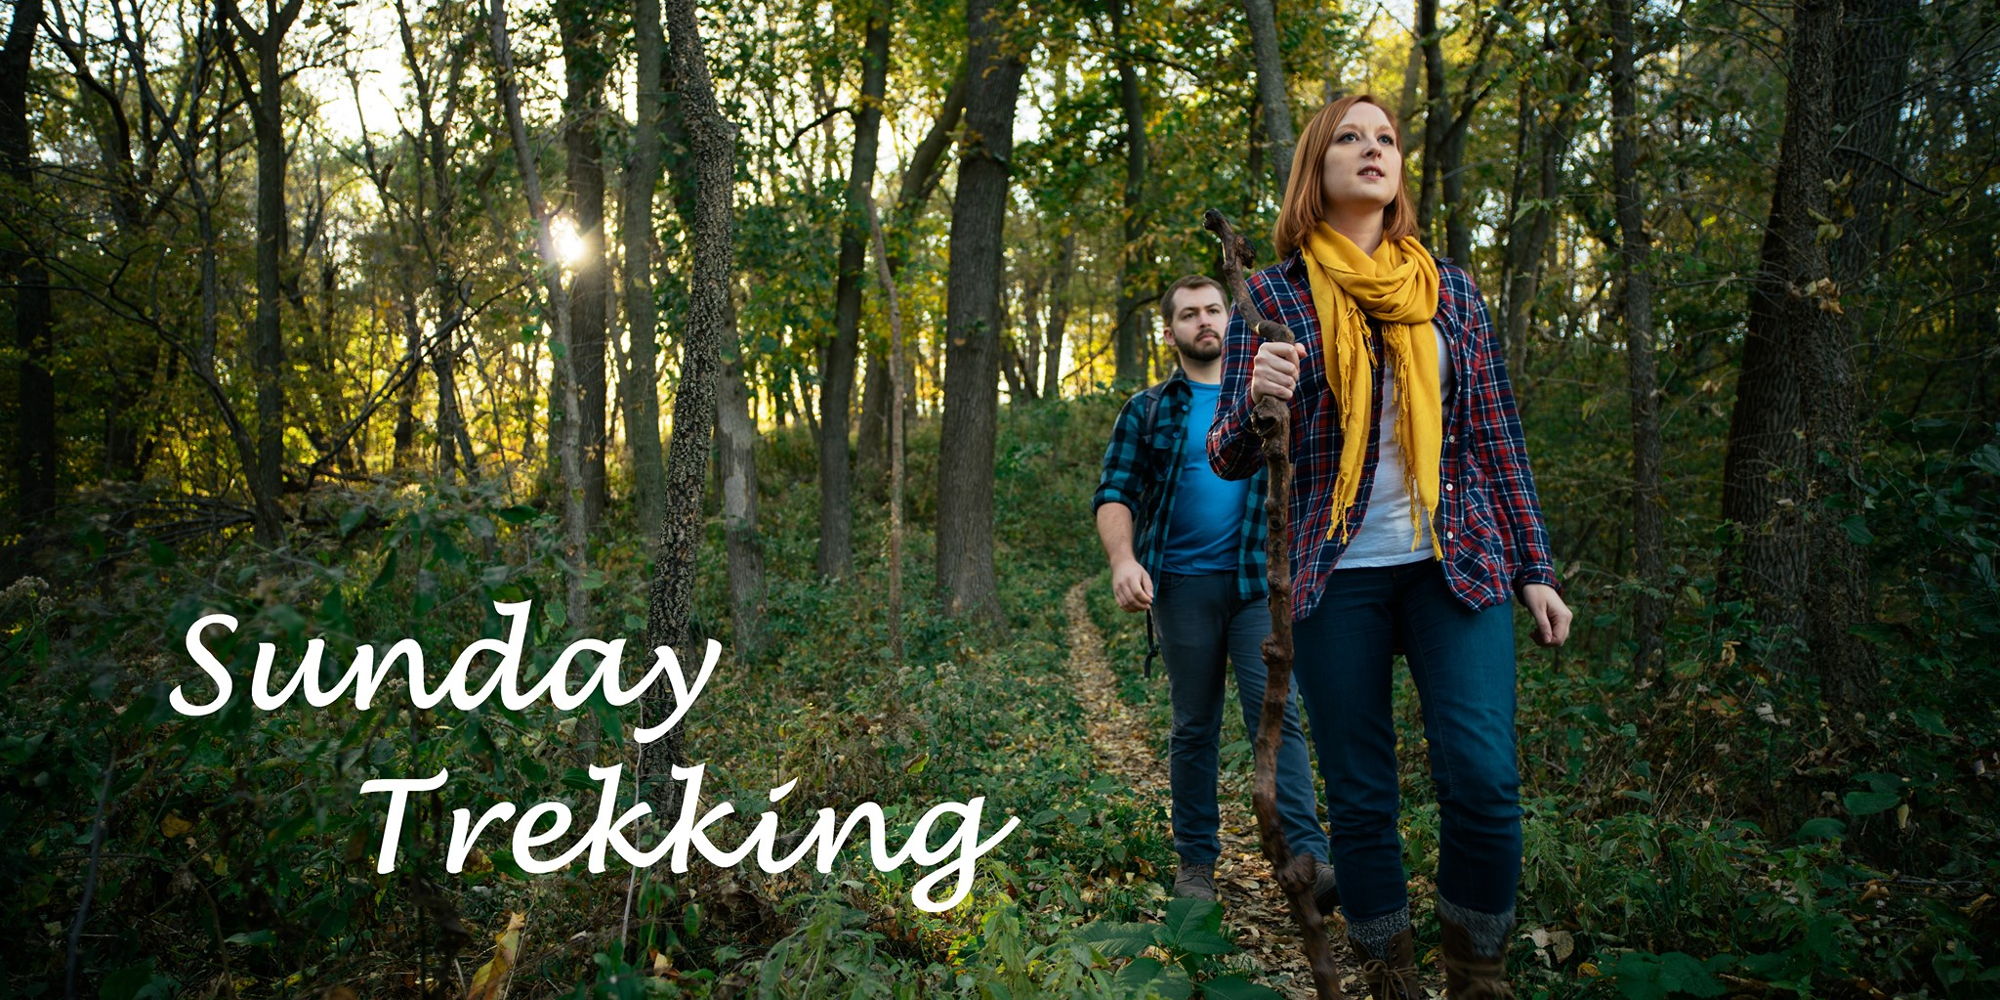 Sunday Trekking promotional image